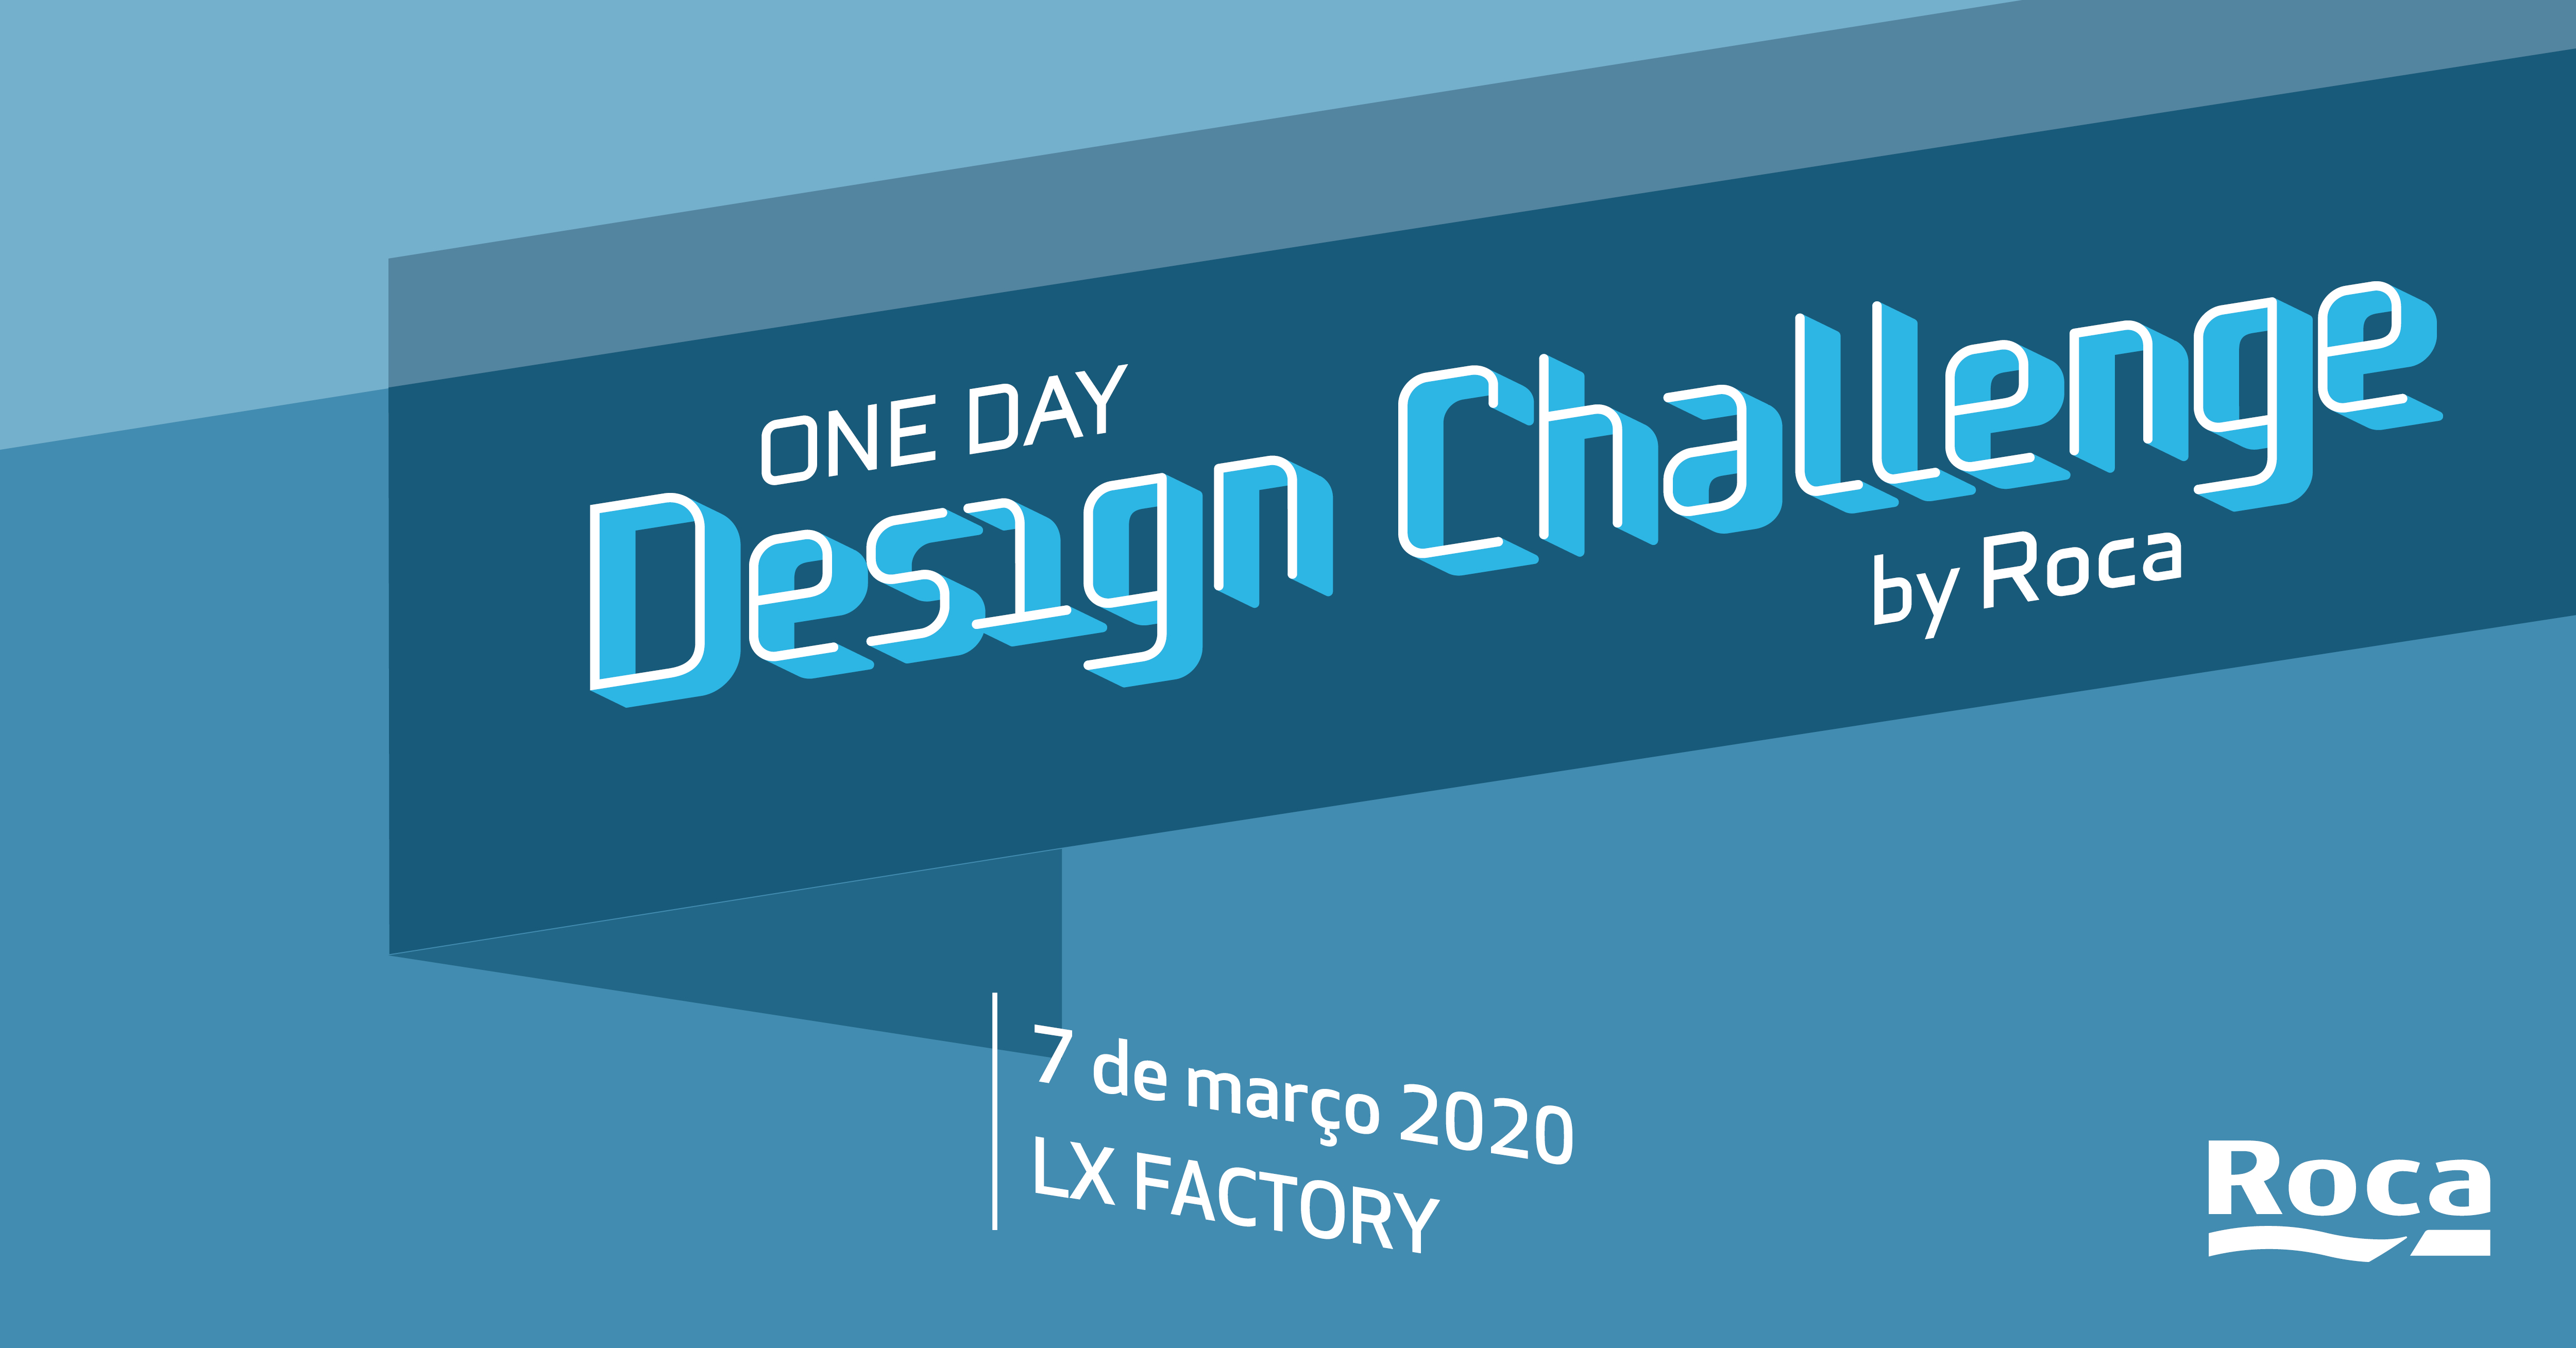 Concurso Roca One Day Design Challenge - dia 7 de março no LxFactory 